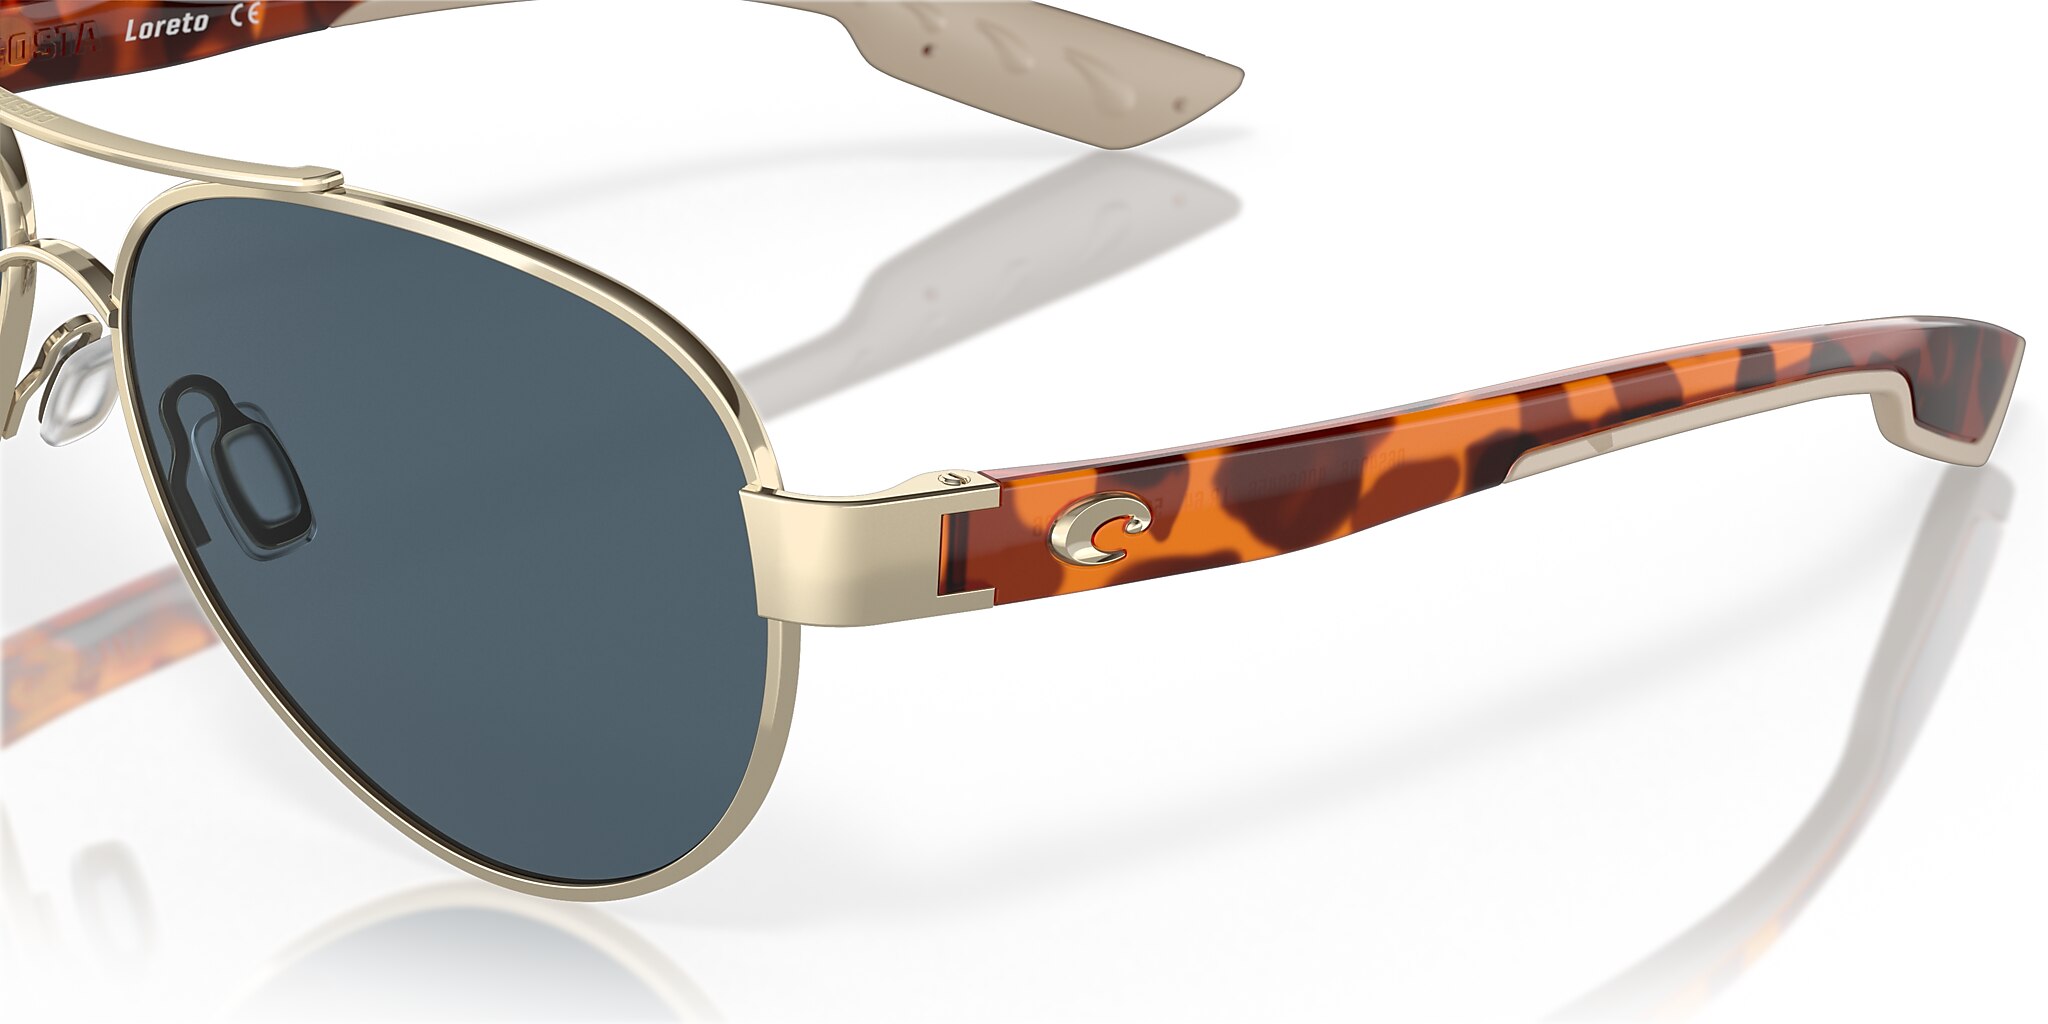 Loreto Polarized Sunglasses in Gray | Costa Del Mar®